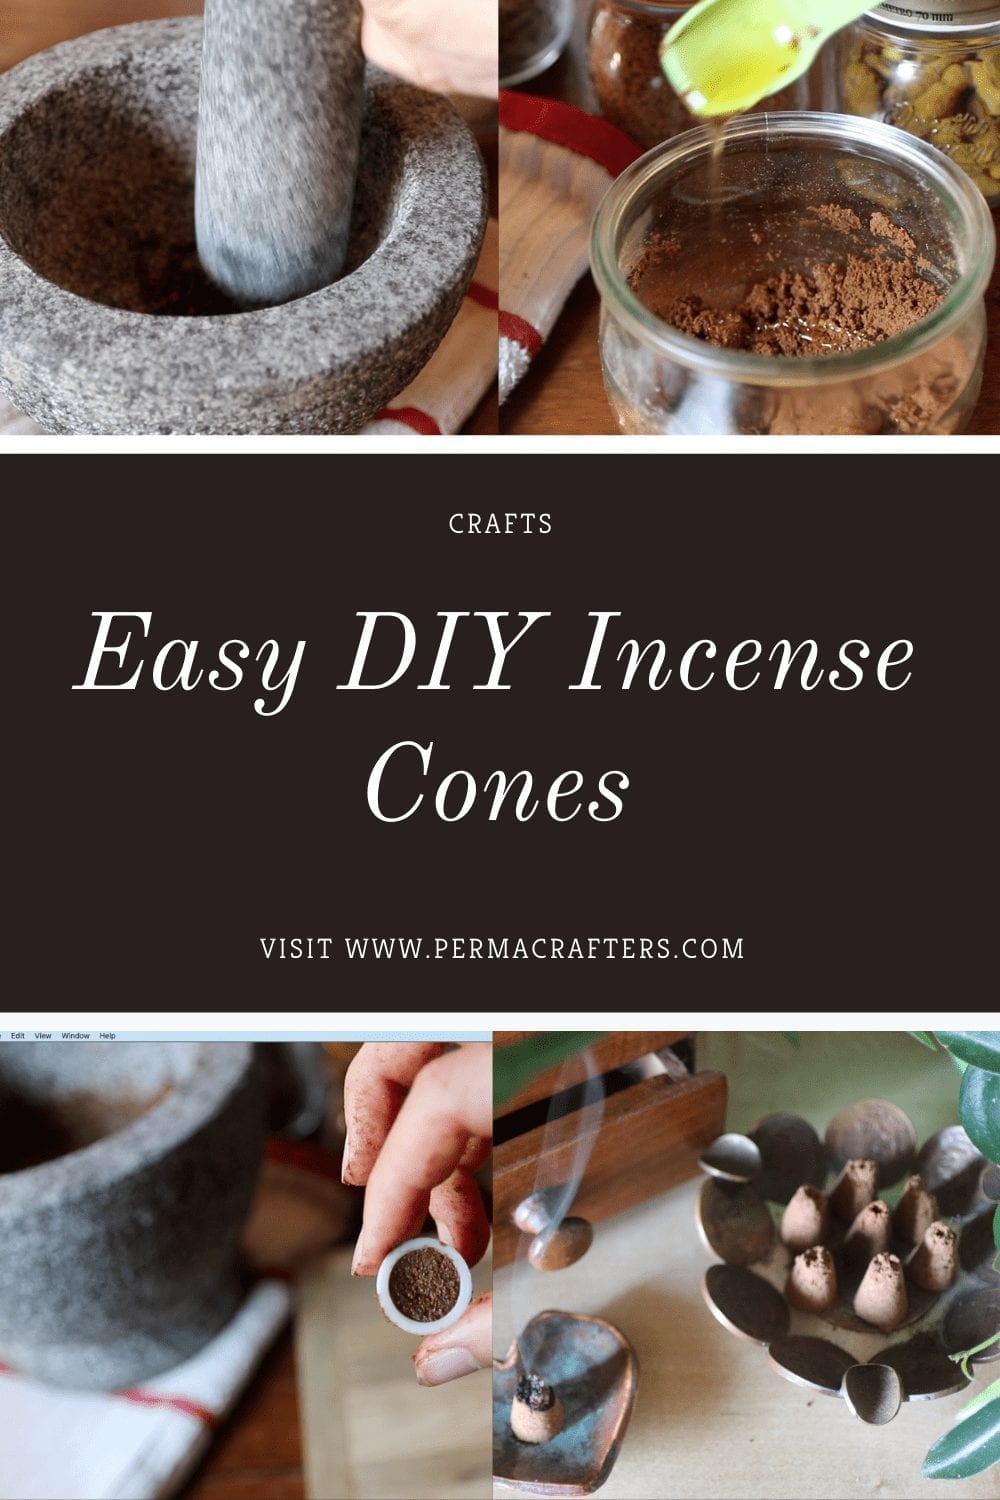 Easy DIY Incense Cones